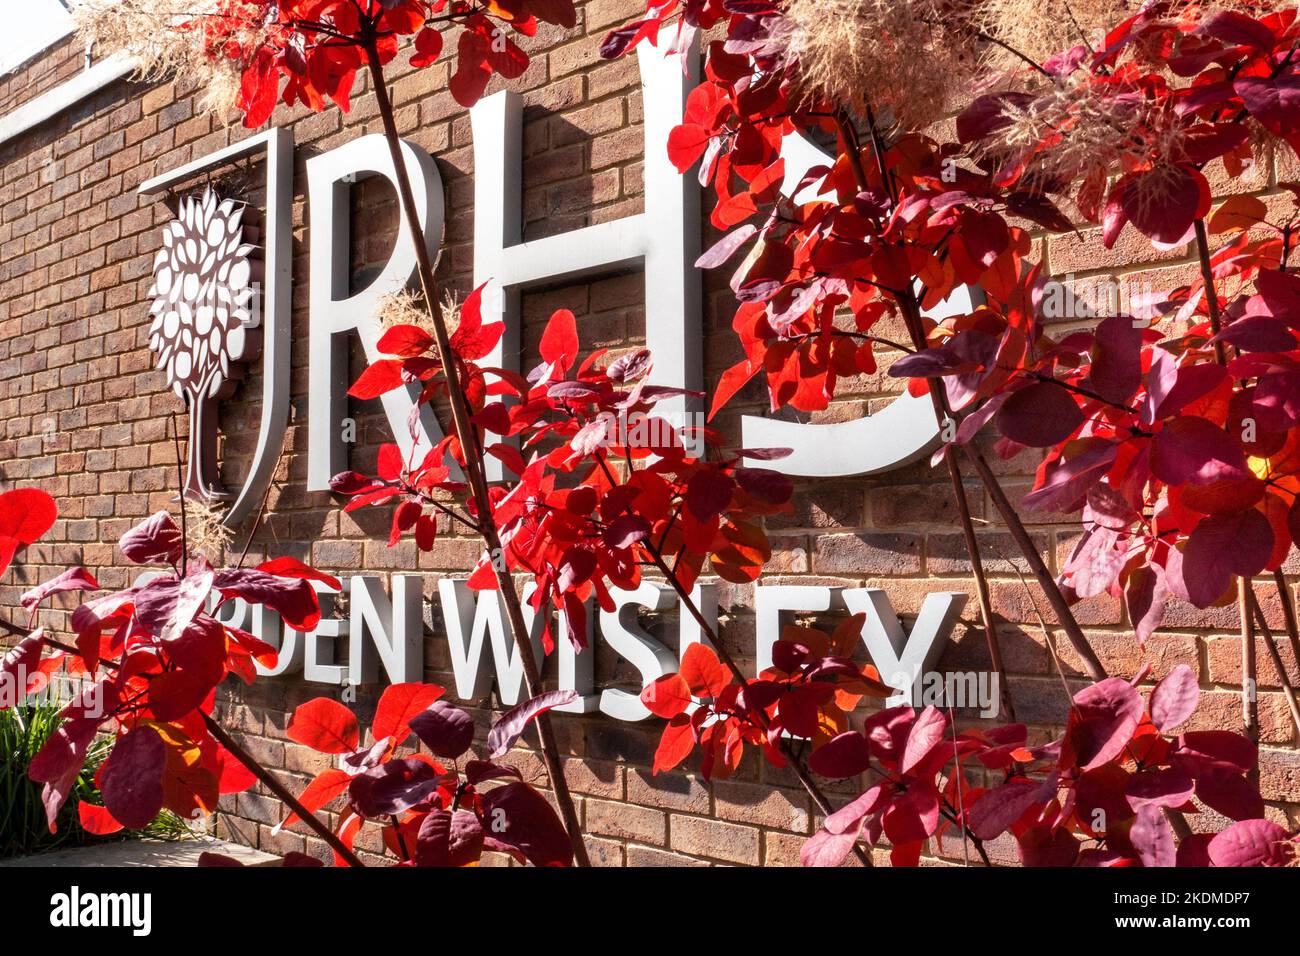 Affiche et logo RHS Garden. Entrée Wisley vue à travers le feuillage de feuilles rouges automnales dans des conditions ensoleillées Wisley Gardens Surrey Royaume-Uni Banque D'Images